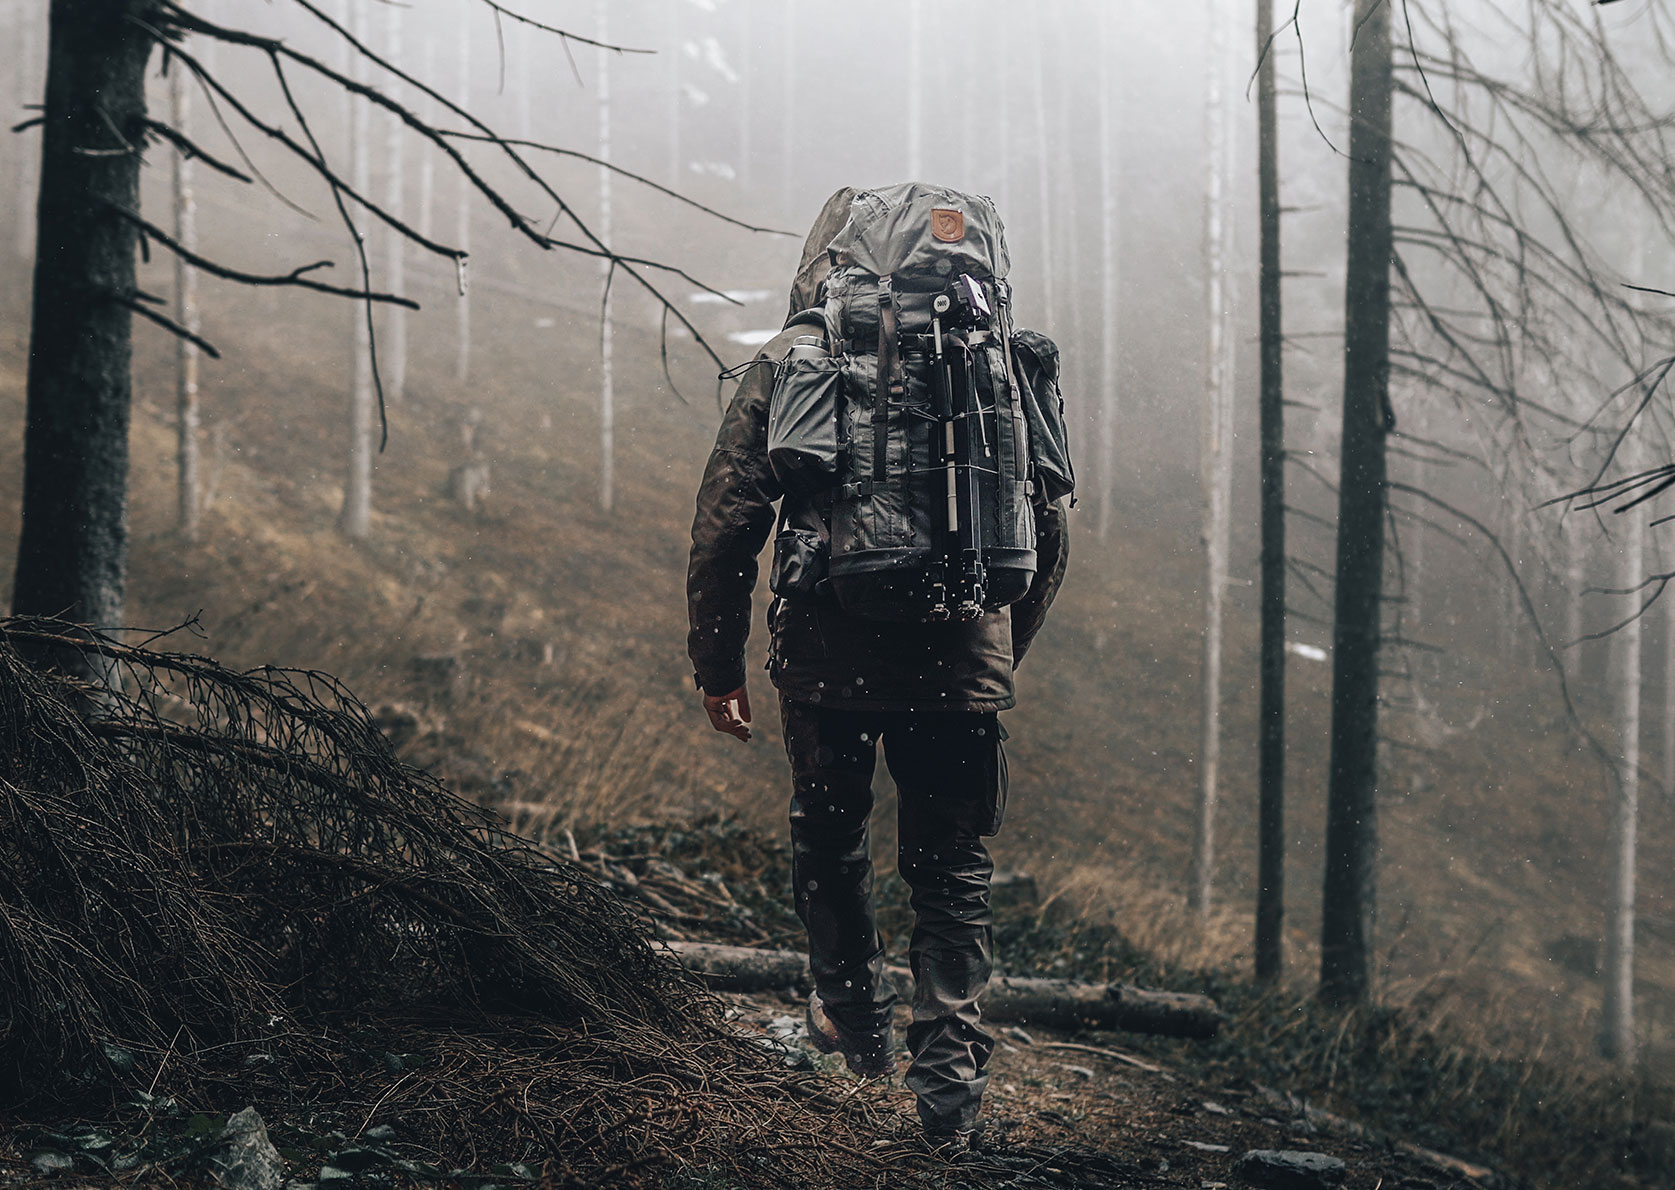 Alex Wander goes bushcrafting with a big backpack through a foggy forest